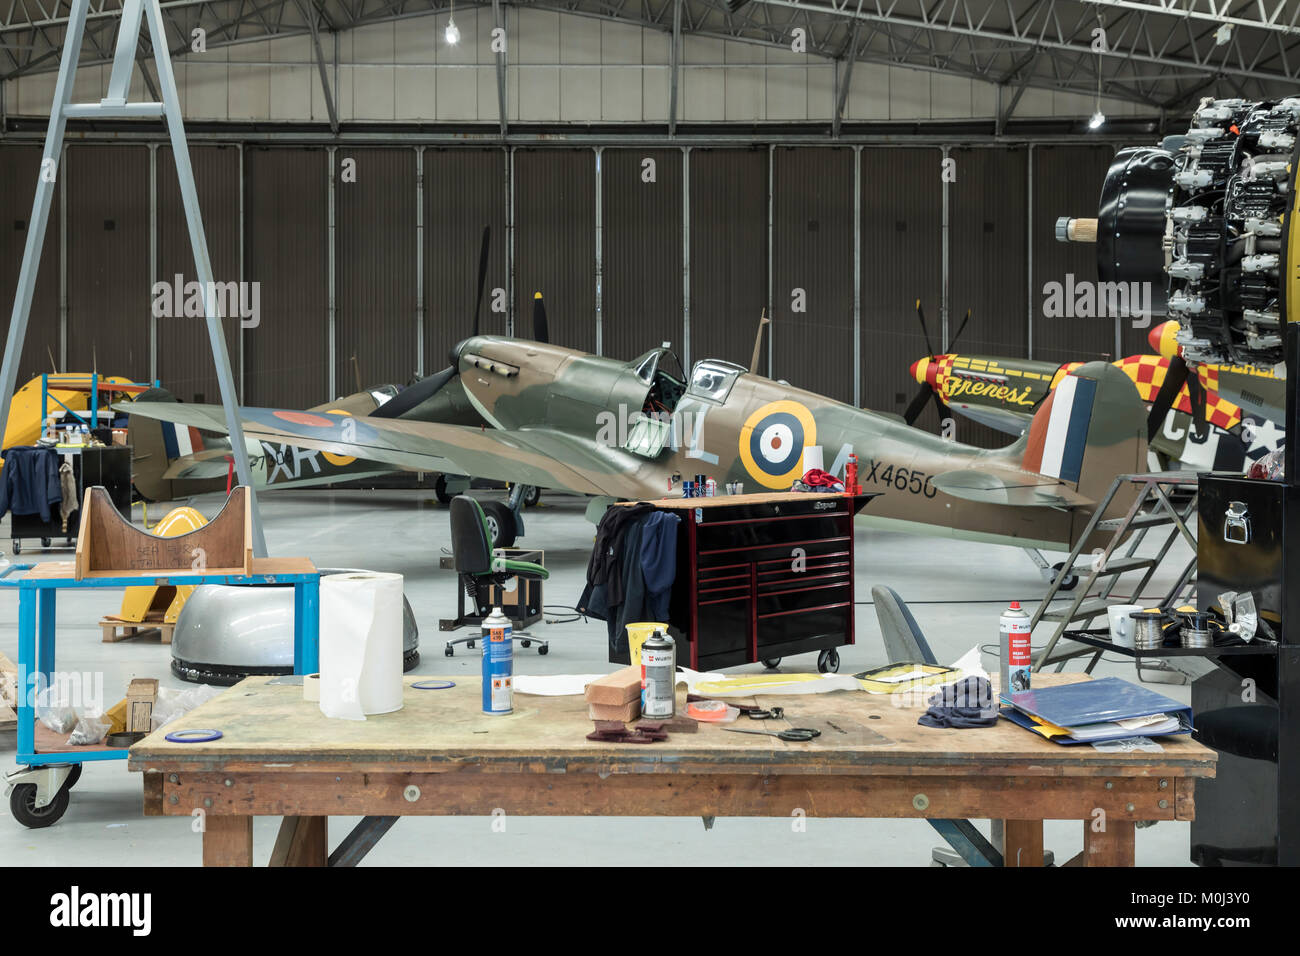 Einer der Duxford Hangars mit klassischen Warbirds auf Wartung, Reparatur und Überholung, 23. September 2017 in Duxford Cambridgeshire, Großbritannien Stockfoto